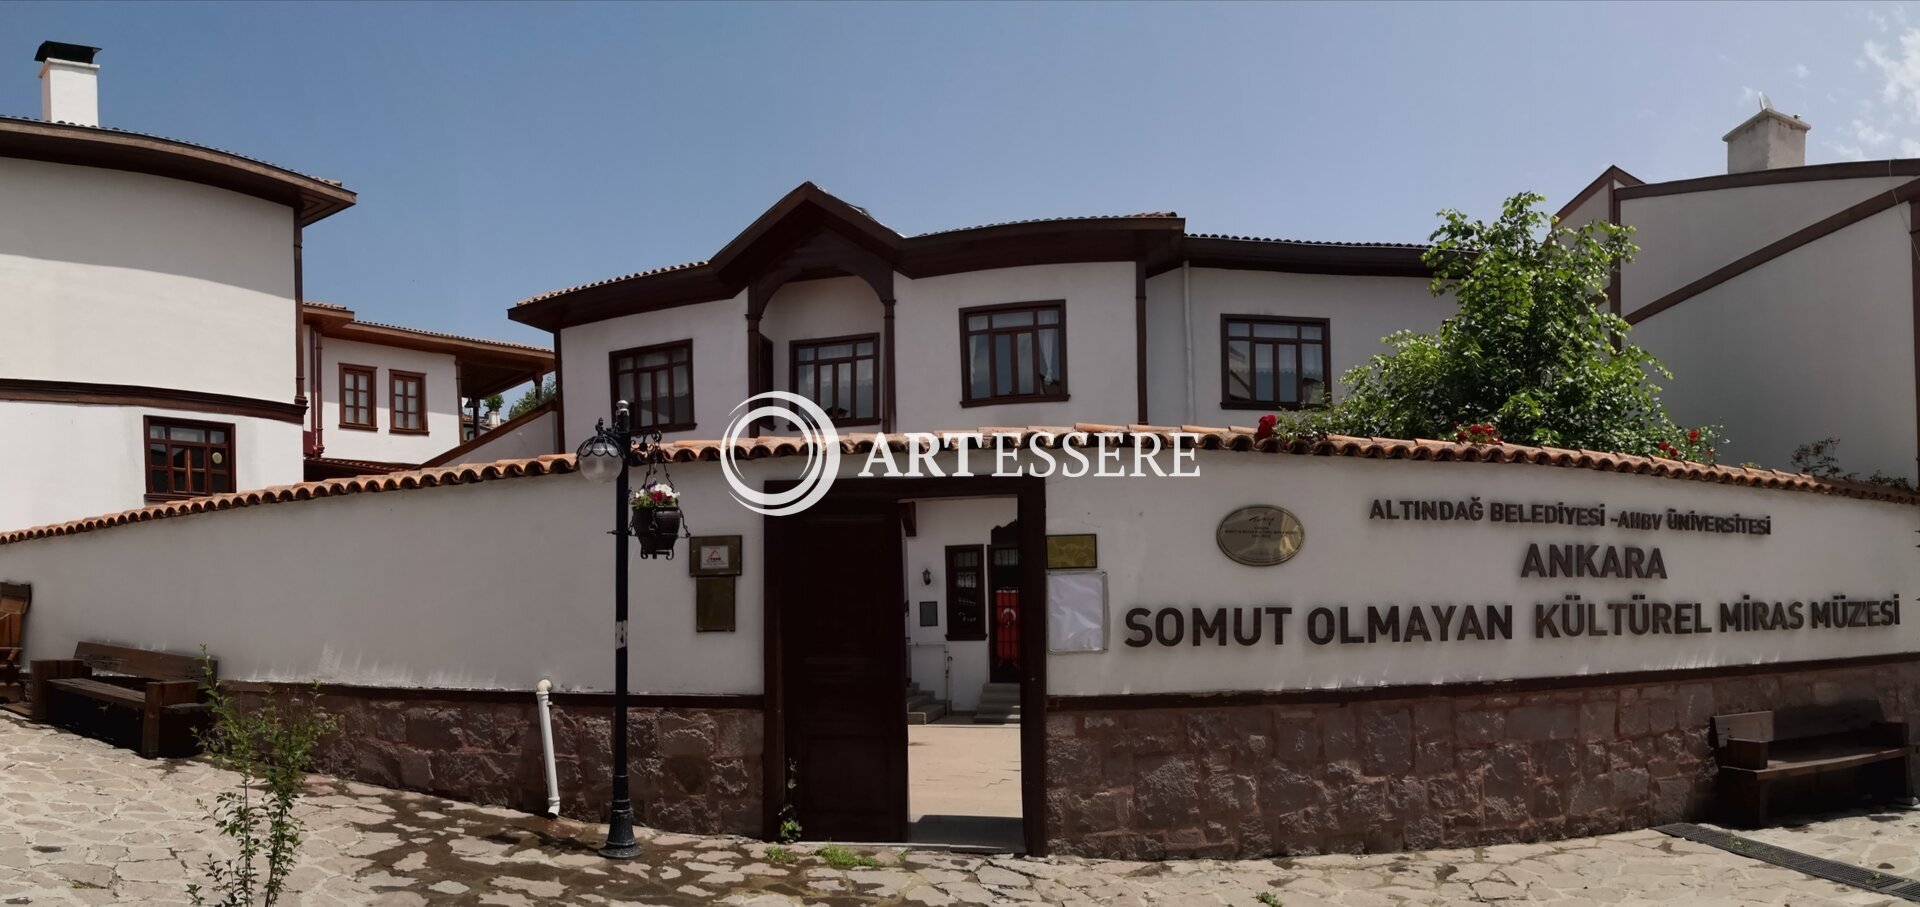 Ankara Intangible Cultural Heritage Museum